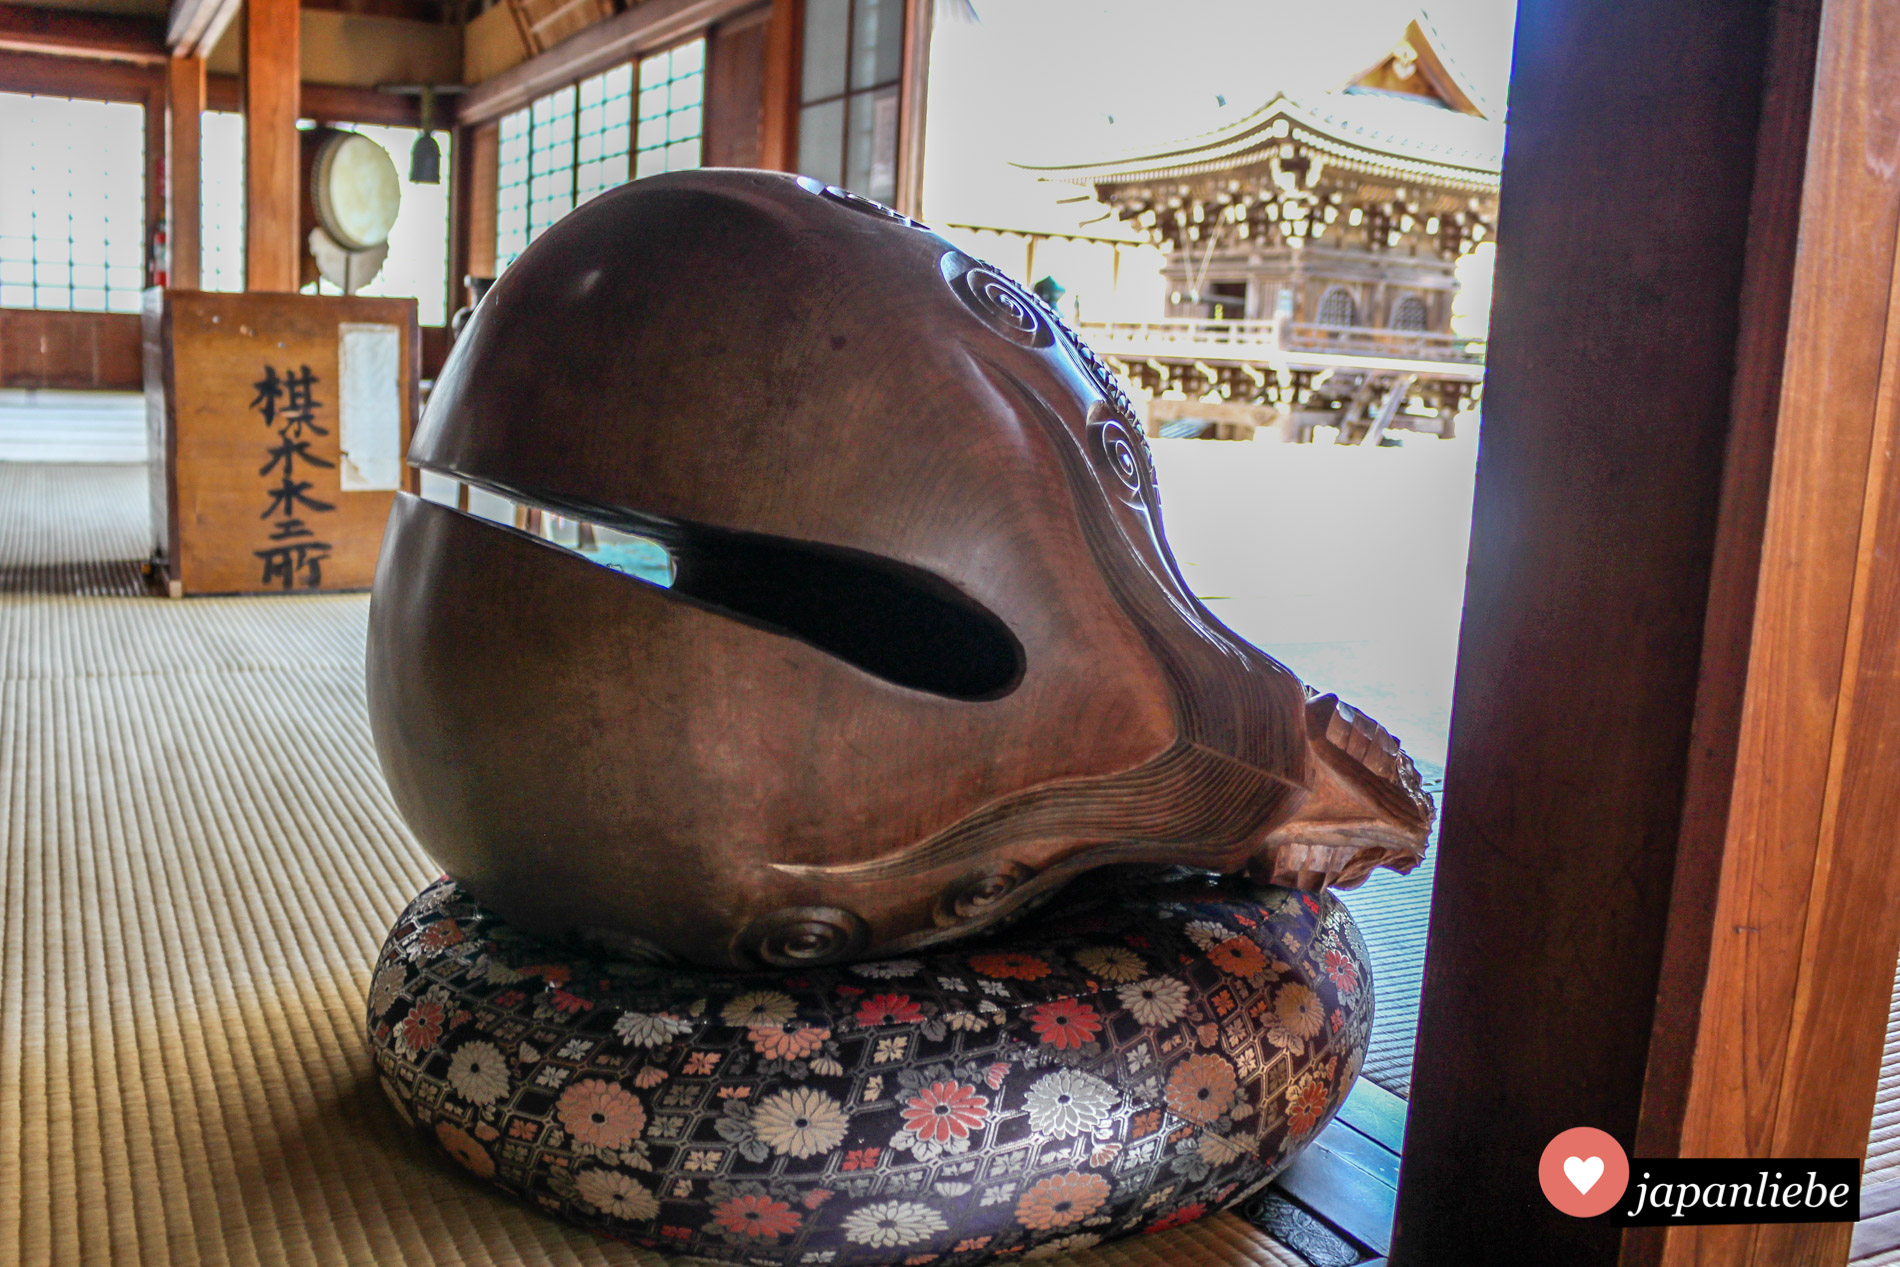 Dieser große Holzfisch befindet sich im Jōei-ji-Tempel in der Stadt Yamaguchi.